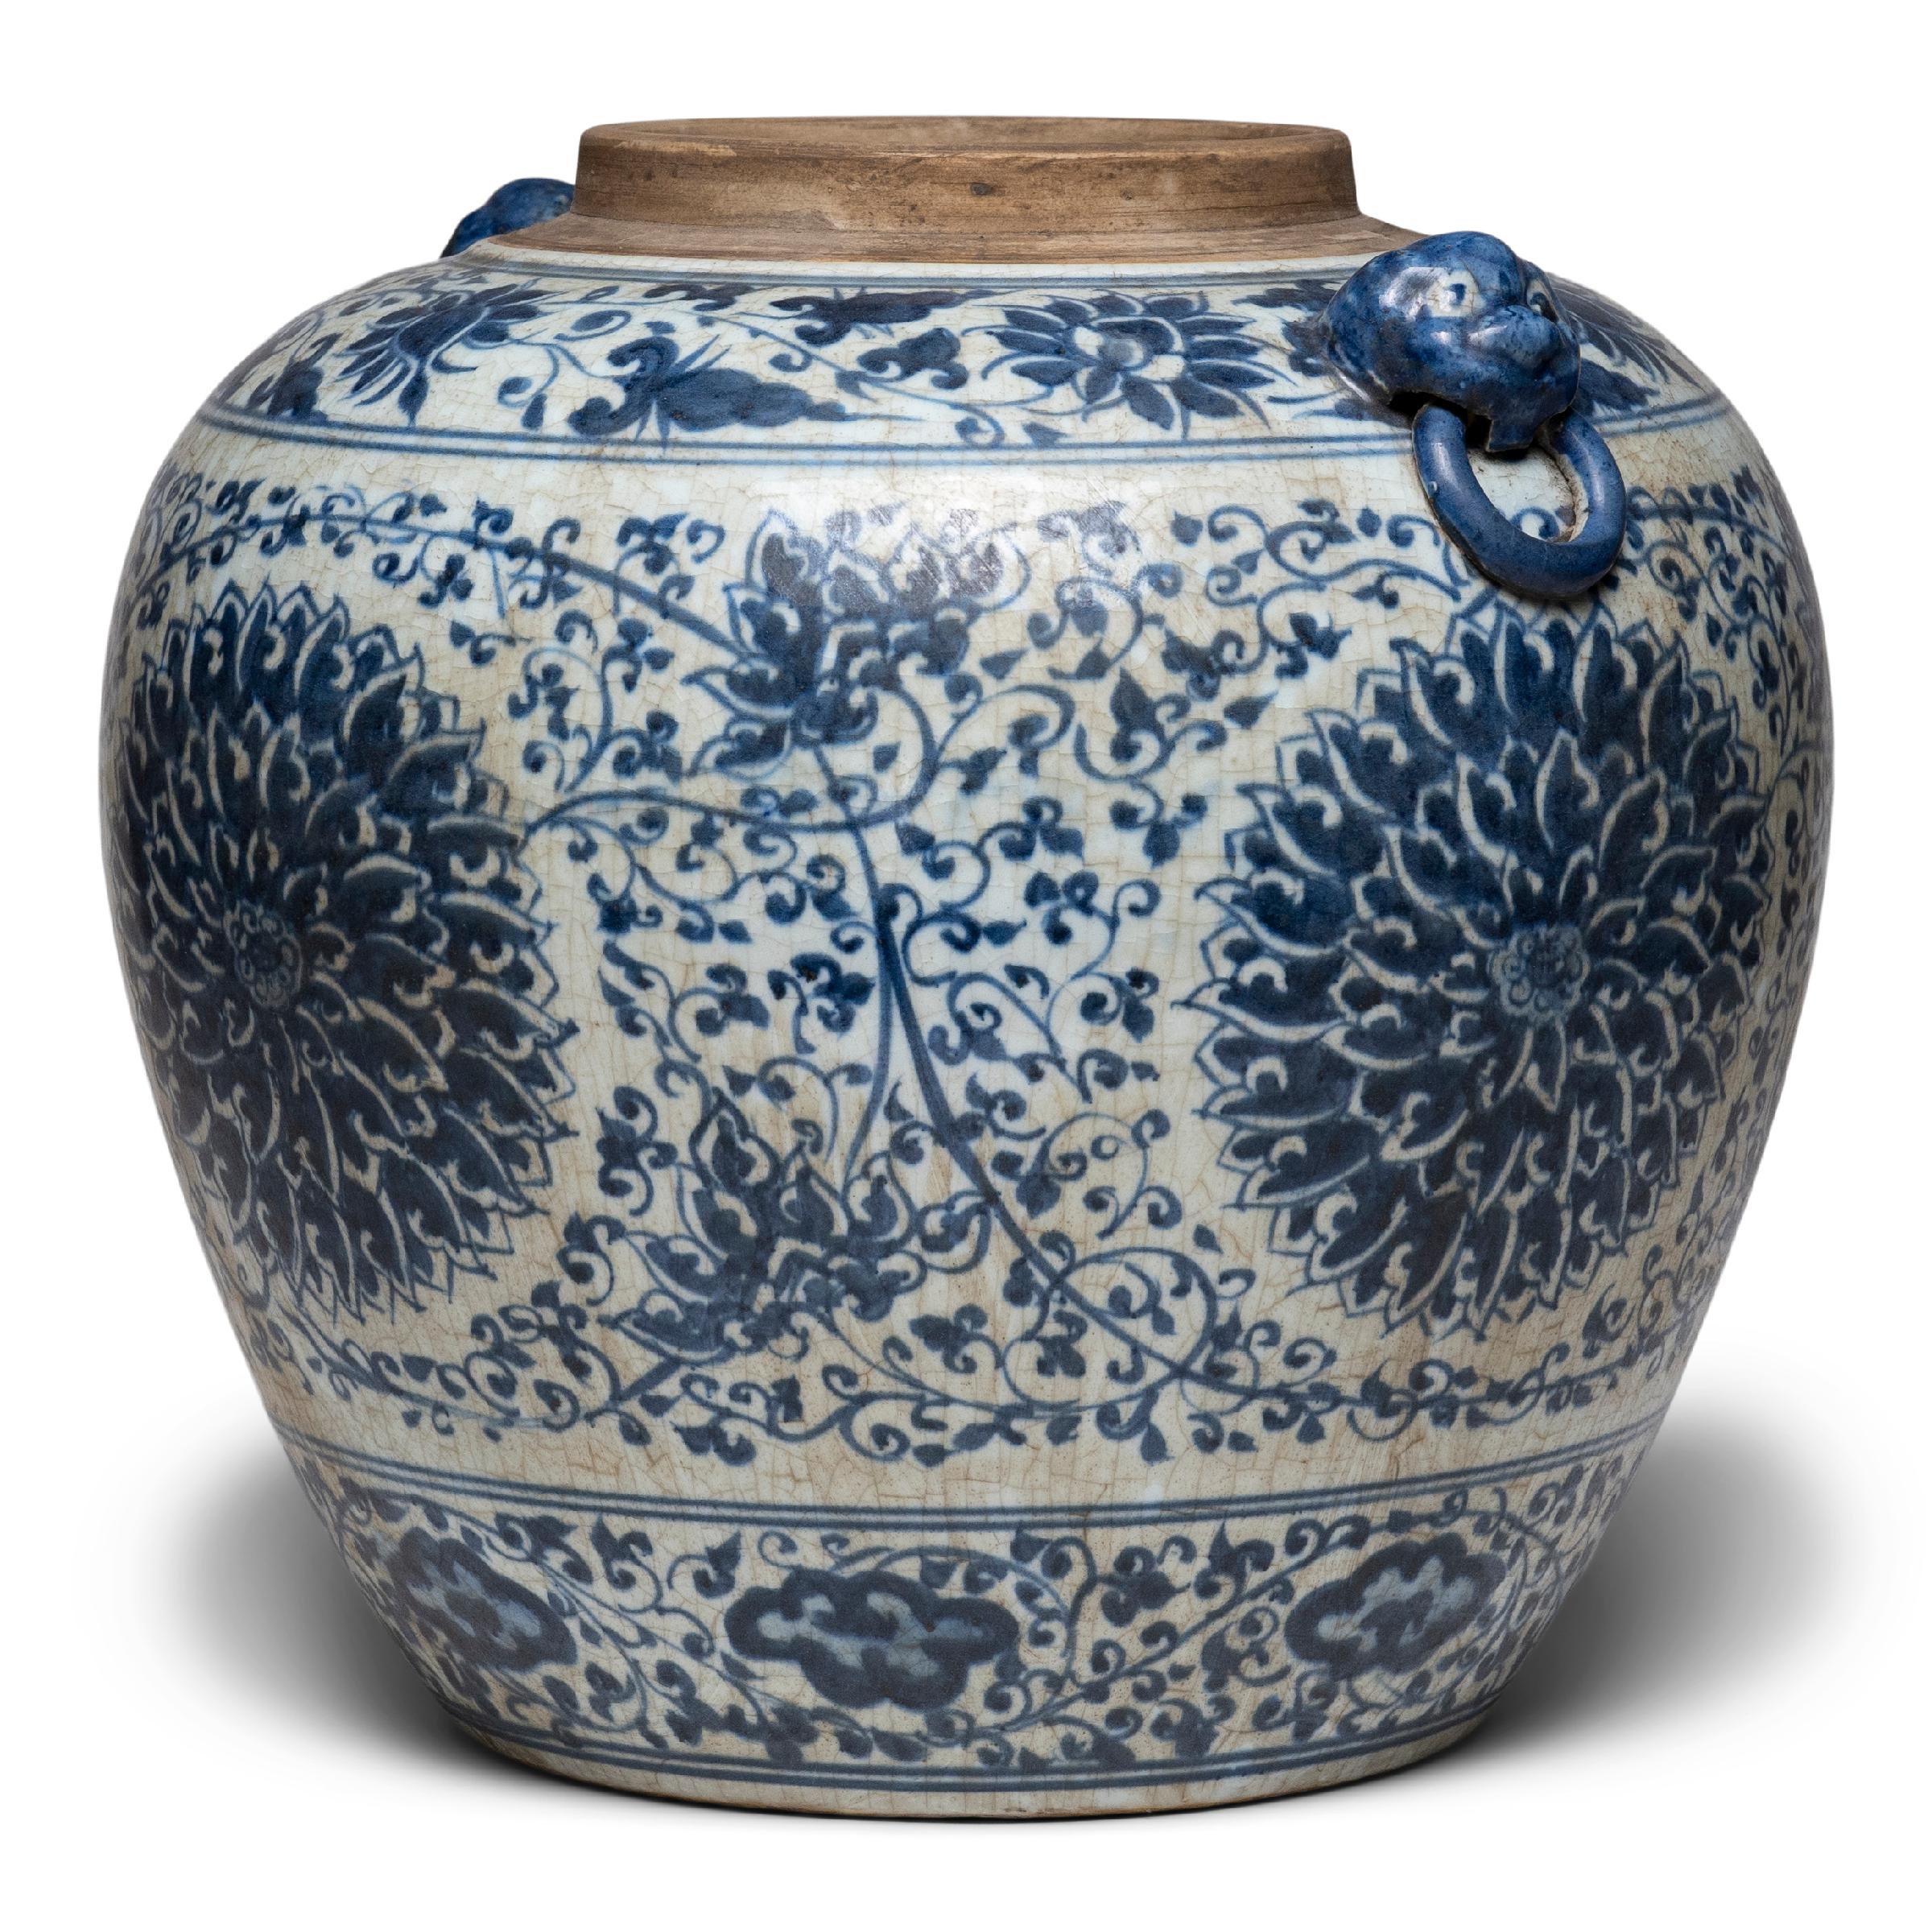 Ce grand pot à gingembre effilé s'inscrit dans une tradition séculaire de la porcelaine chinoise bleu et blanc. Peinte avec un pinceau expressif, la jarre est ornée de vignes traînantes et de fleurs, avec un motif dense autour de grands médaillons